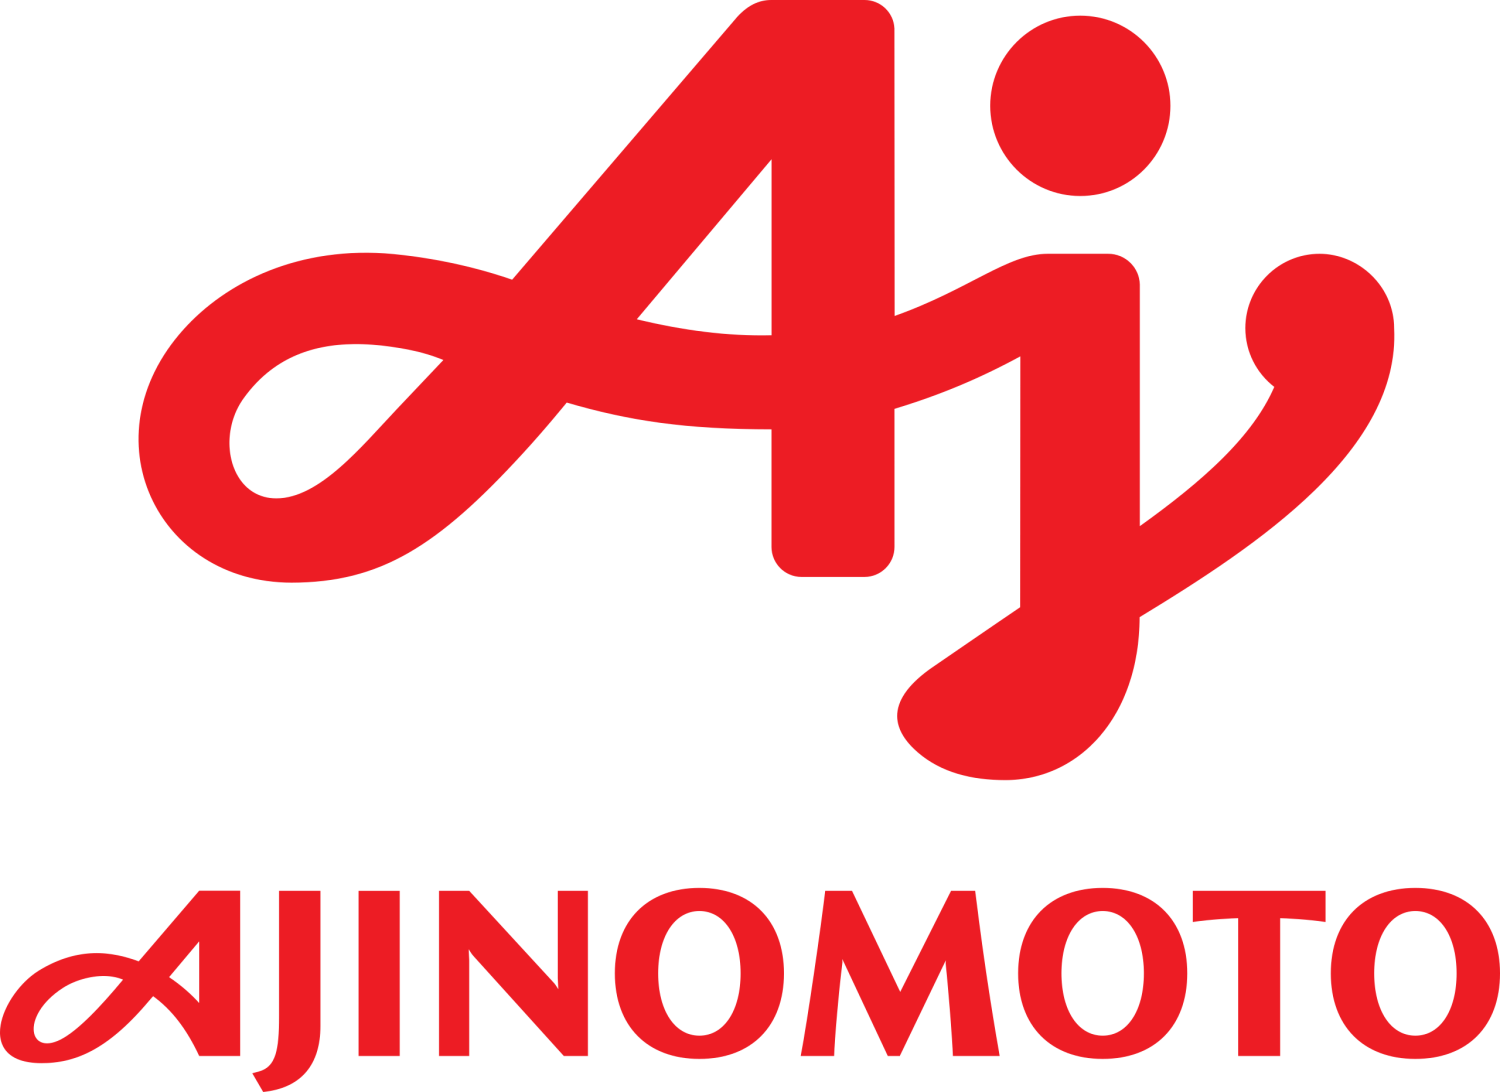 Aji-no-moto